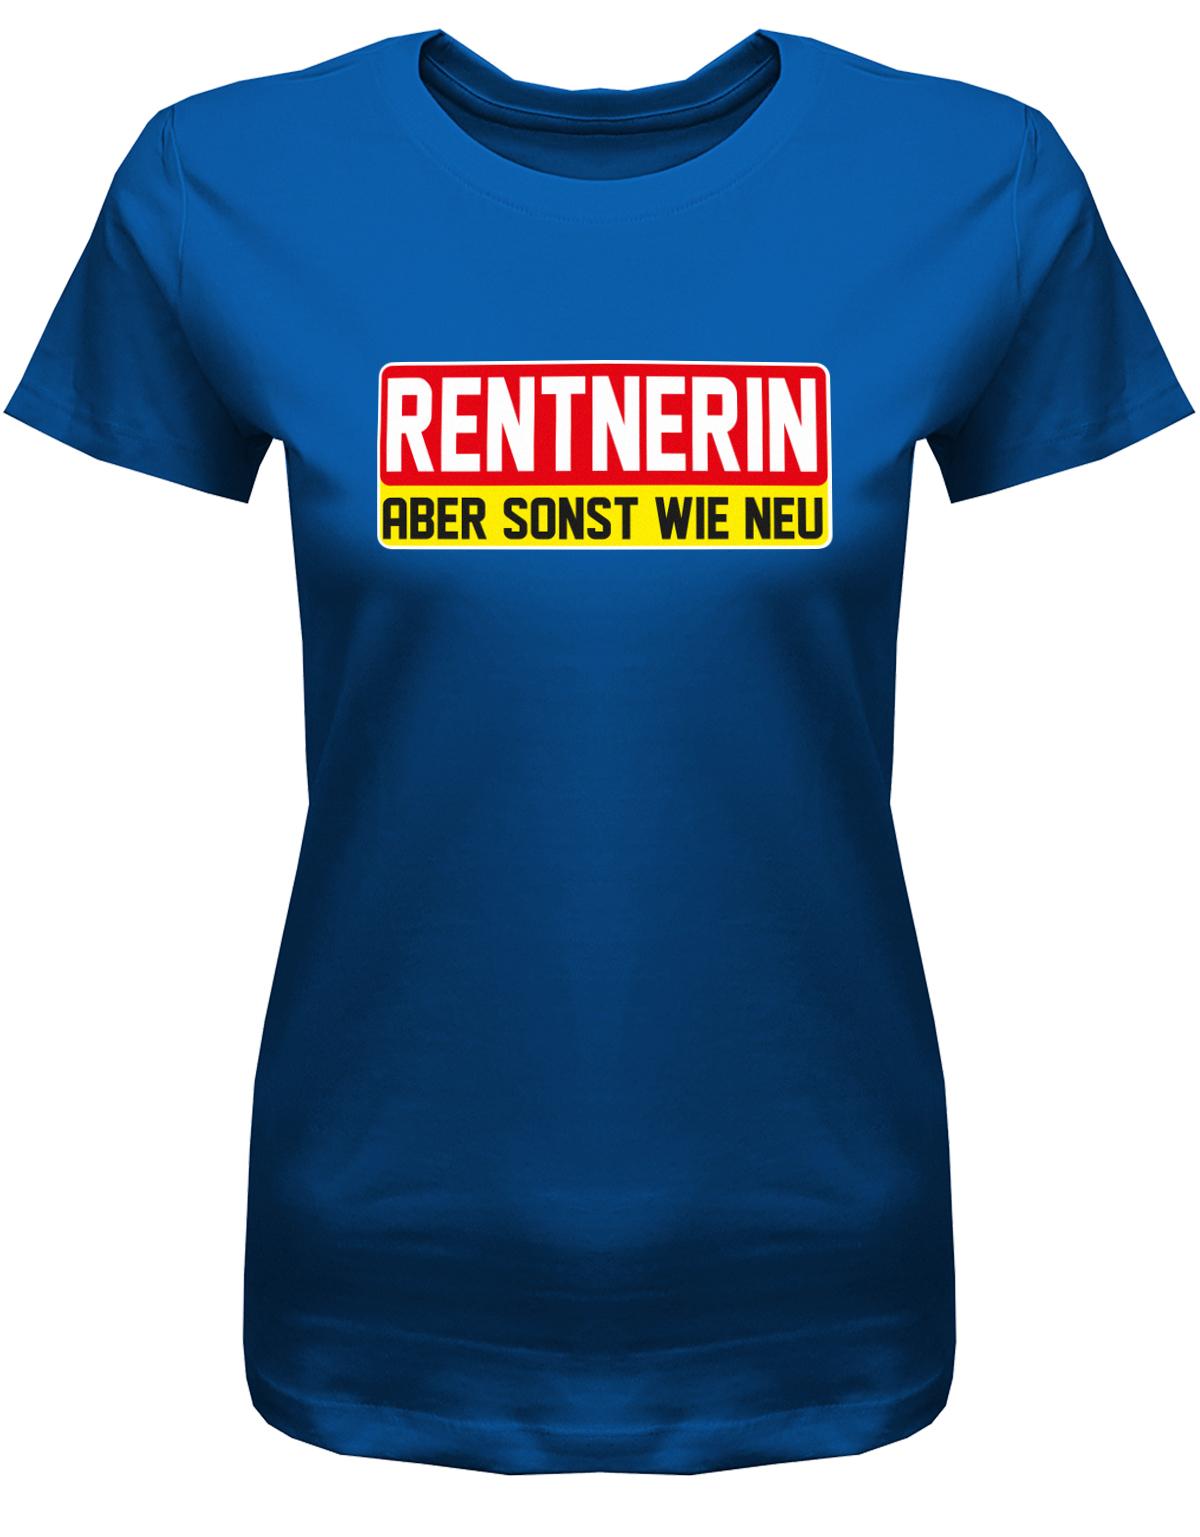 Rentnerin-aber-sonst-wie-neu-Damen-rente-Shirt-Royalblau